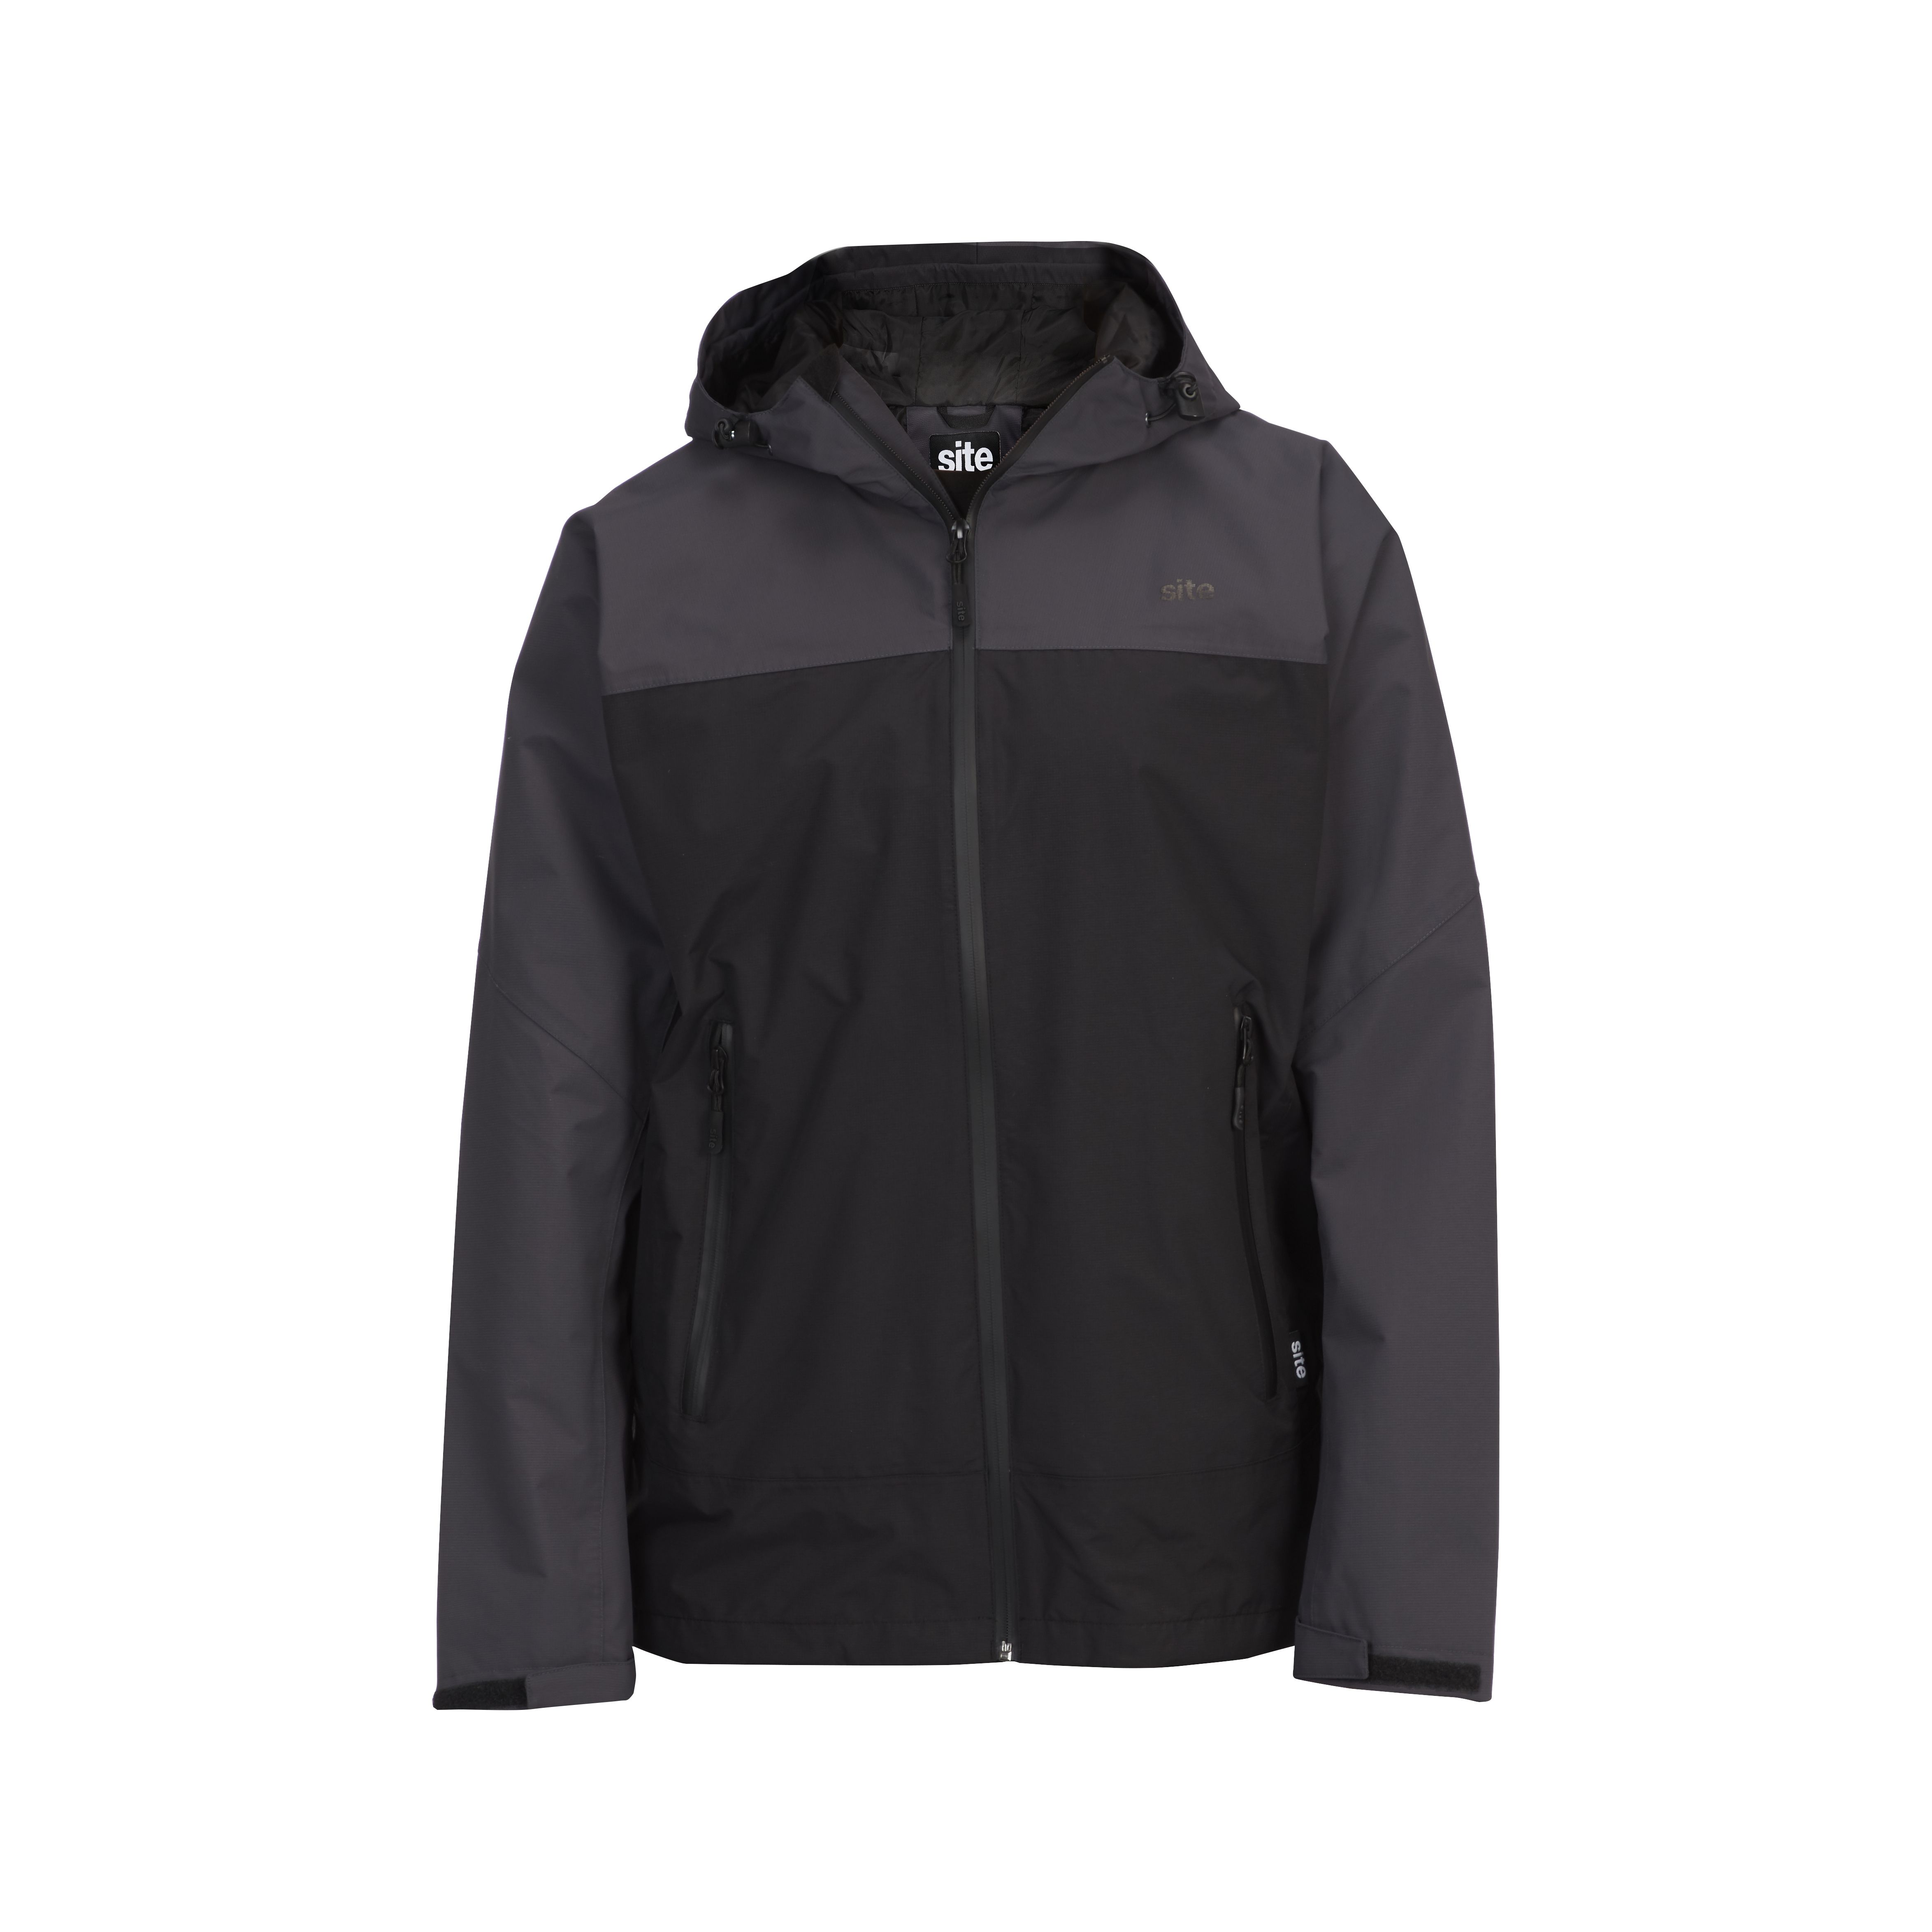 Site Black & grey Waterproof jacket Large | DIY at B&Q